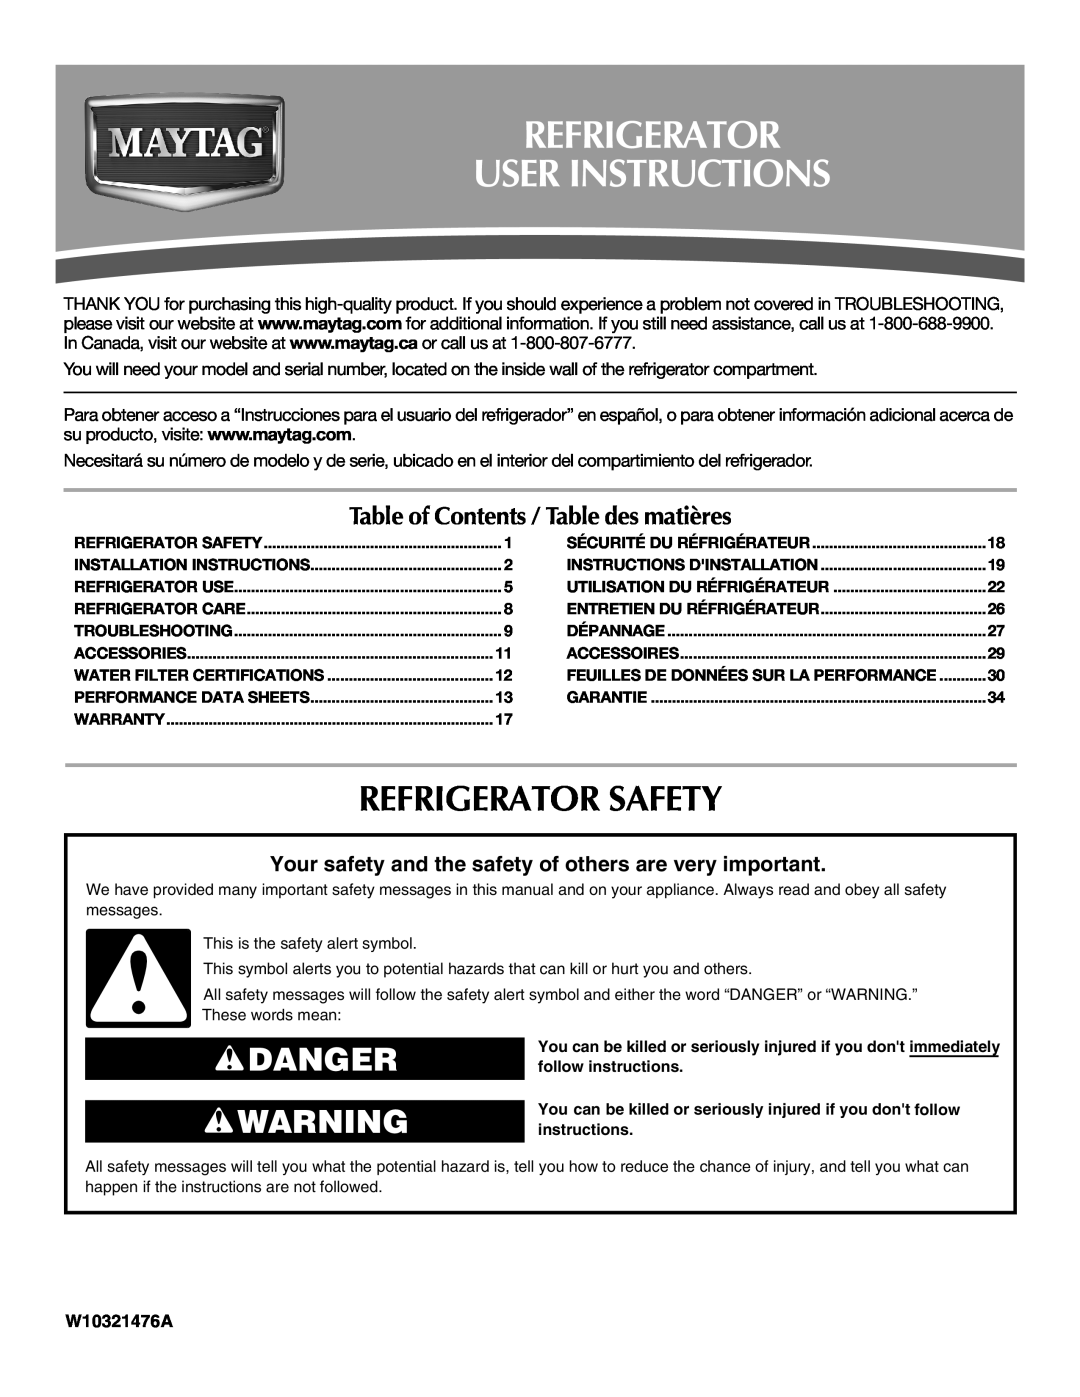 Maytag W10321476A installation instructions Refrigerator User Instructions, Refrigerator Safety, Danger 